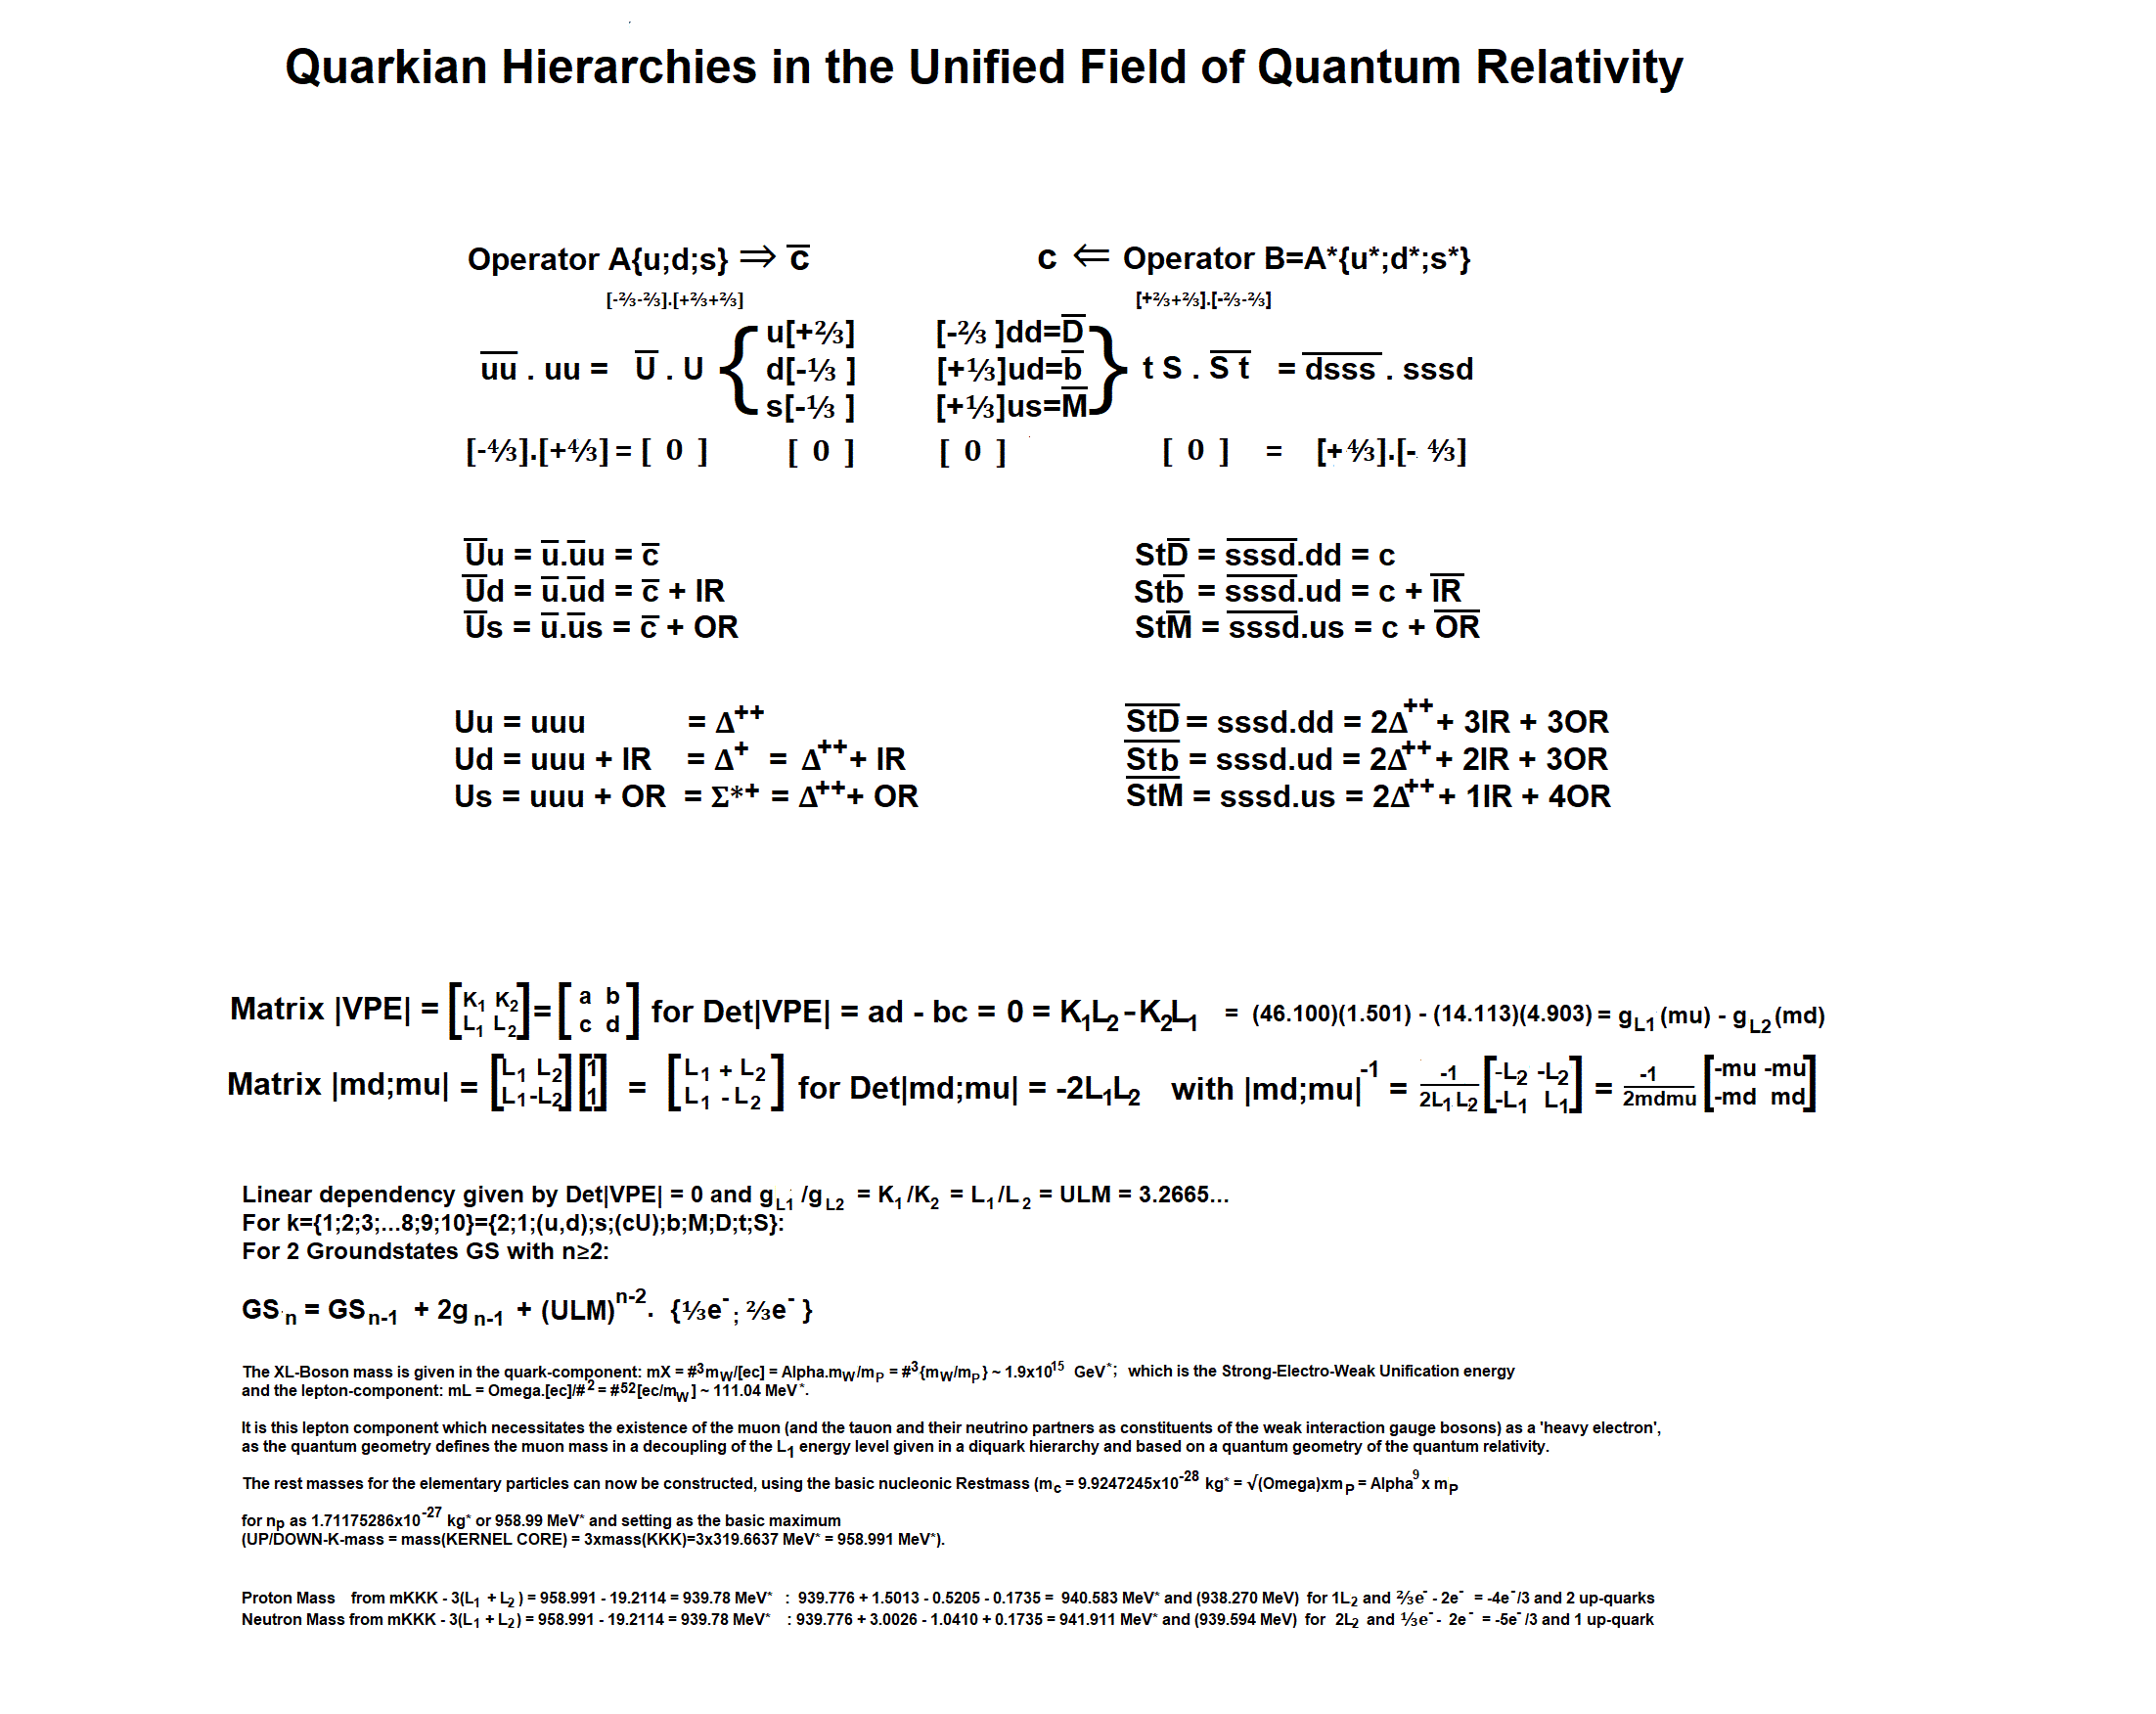 quarkhierarchies.